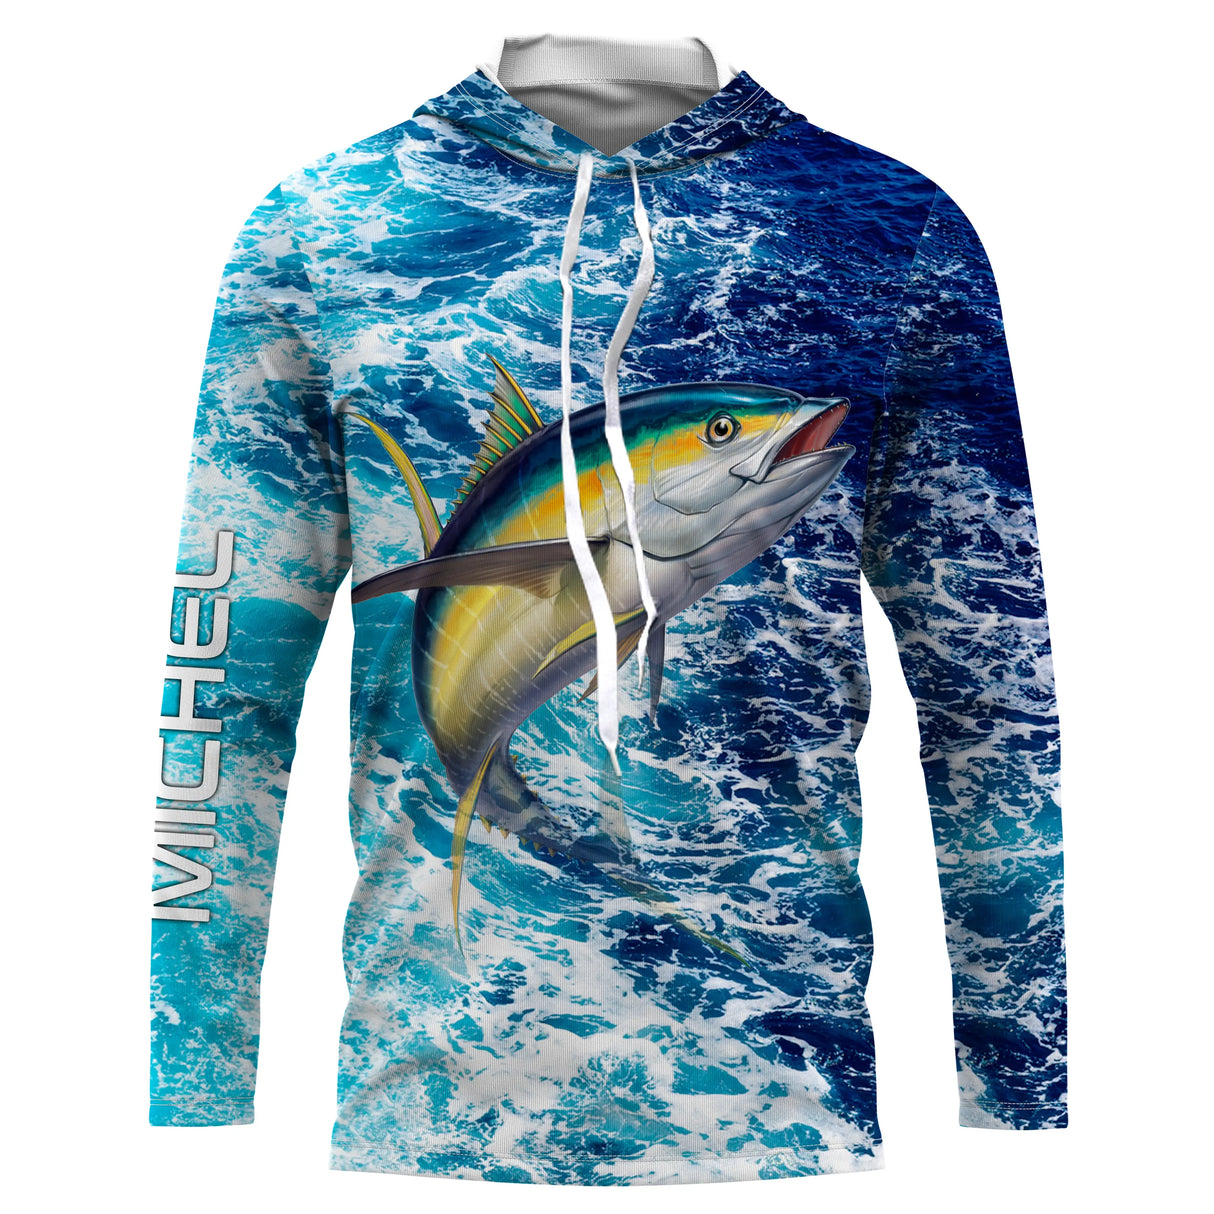 T-shirt personalizzata per la pesca al tonno, regalo originale per la pesca in mare, motivo oceano - CT11082227